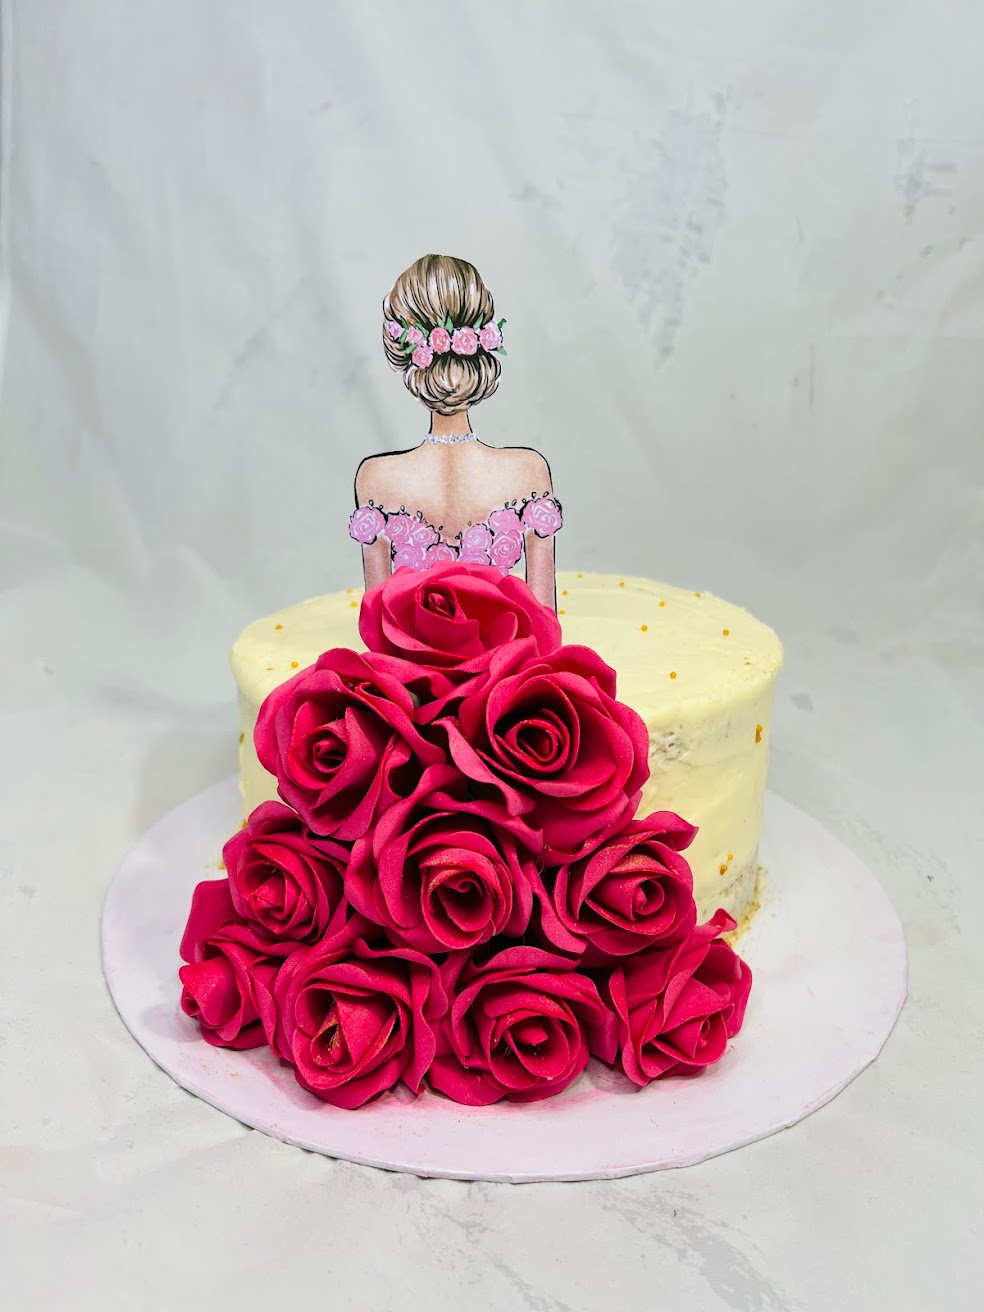 Wedding Photography - The Cake Smash — BICKFORD